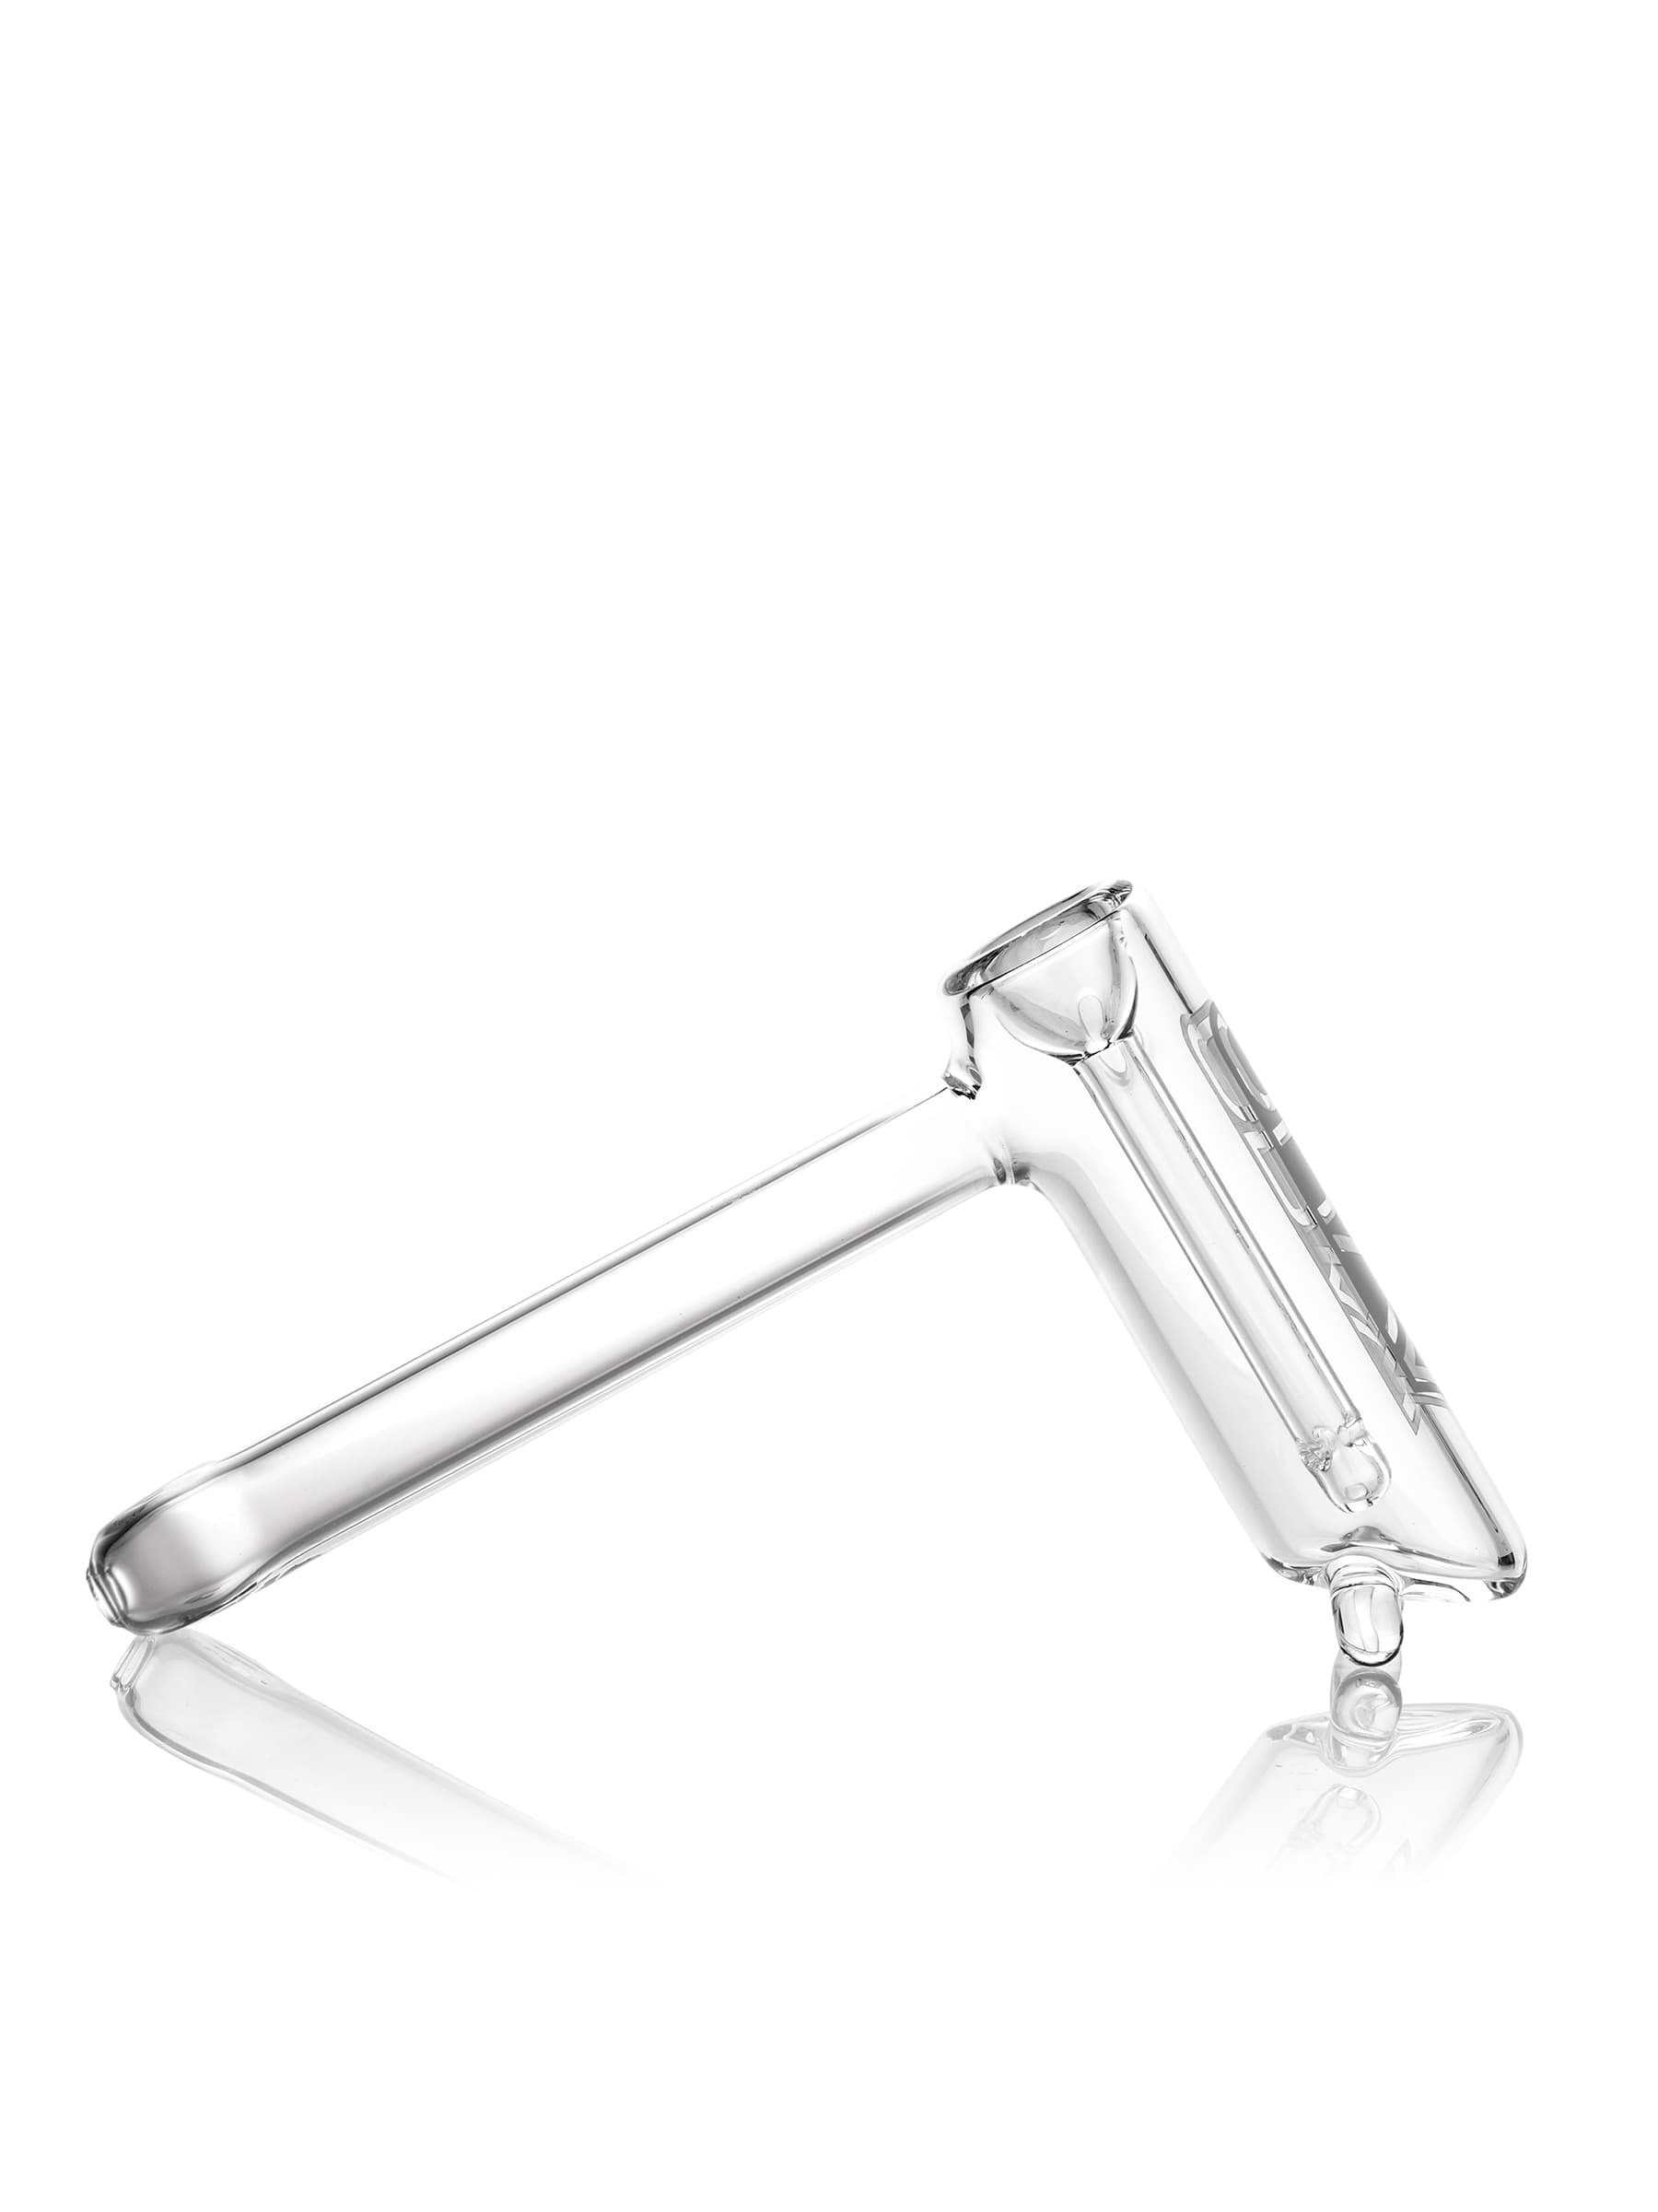 GRAV® Clear Hammer Bubbler - Legacy Style